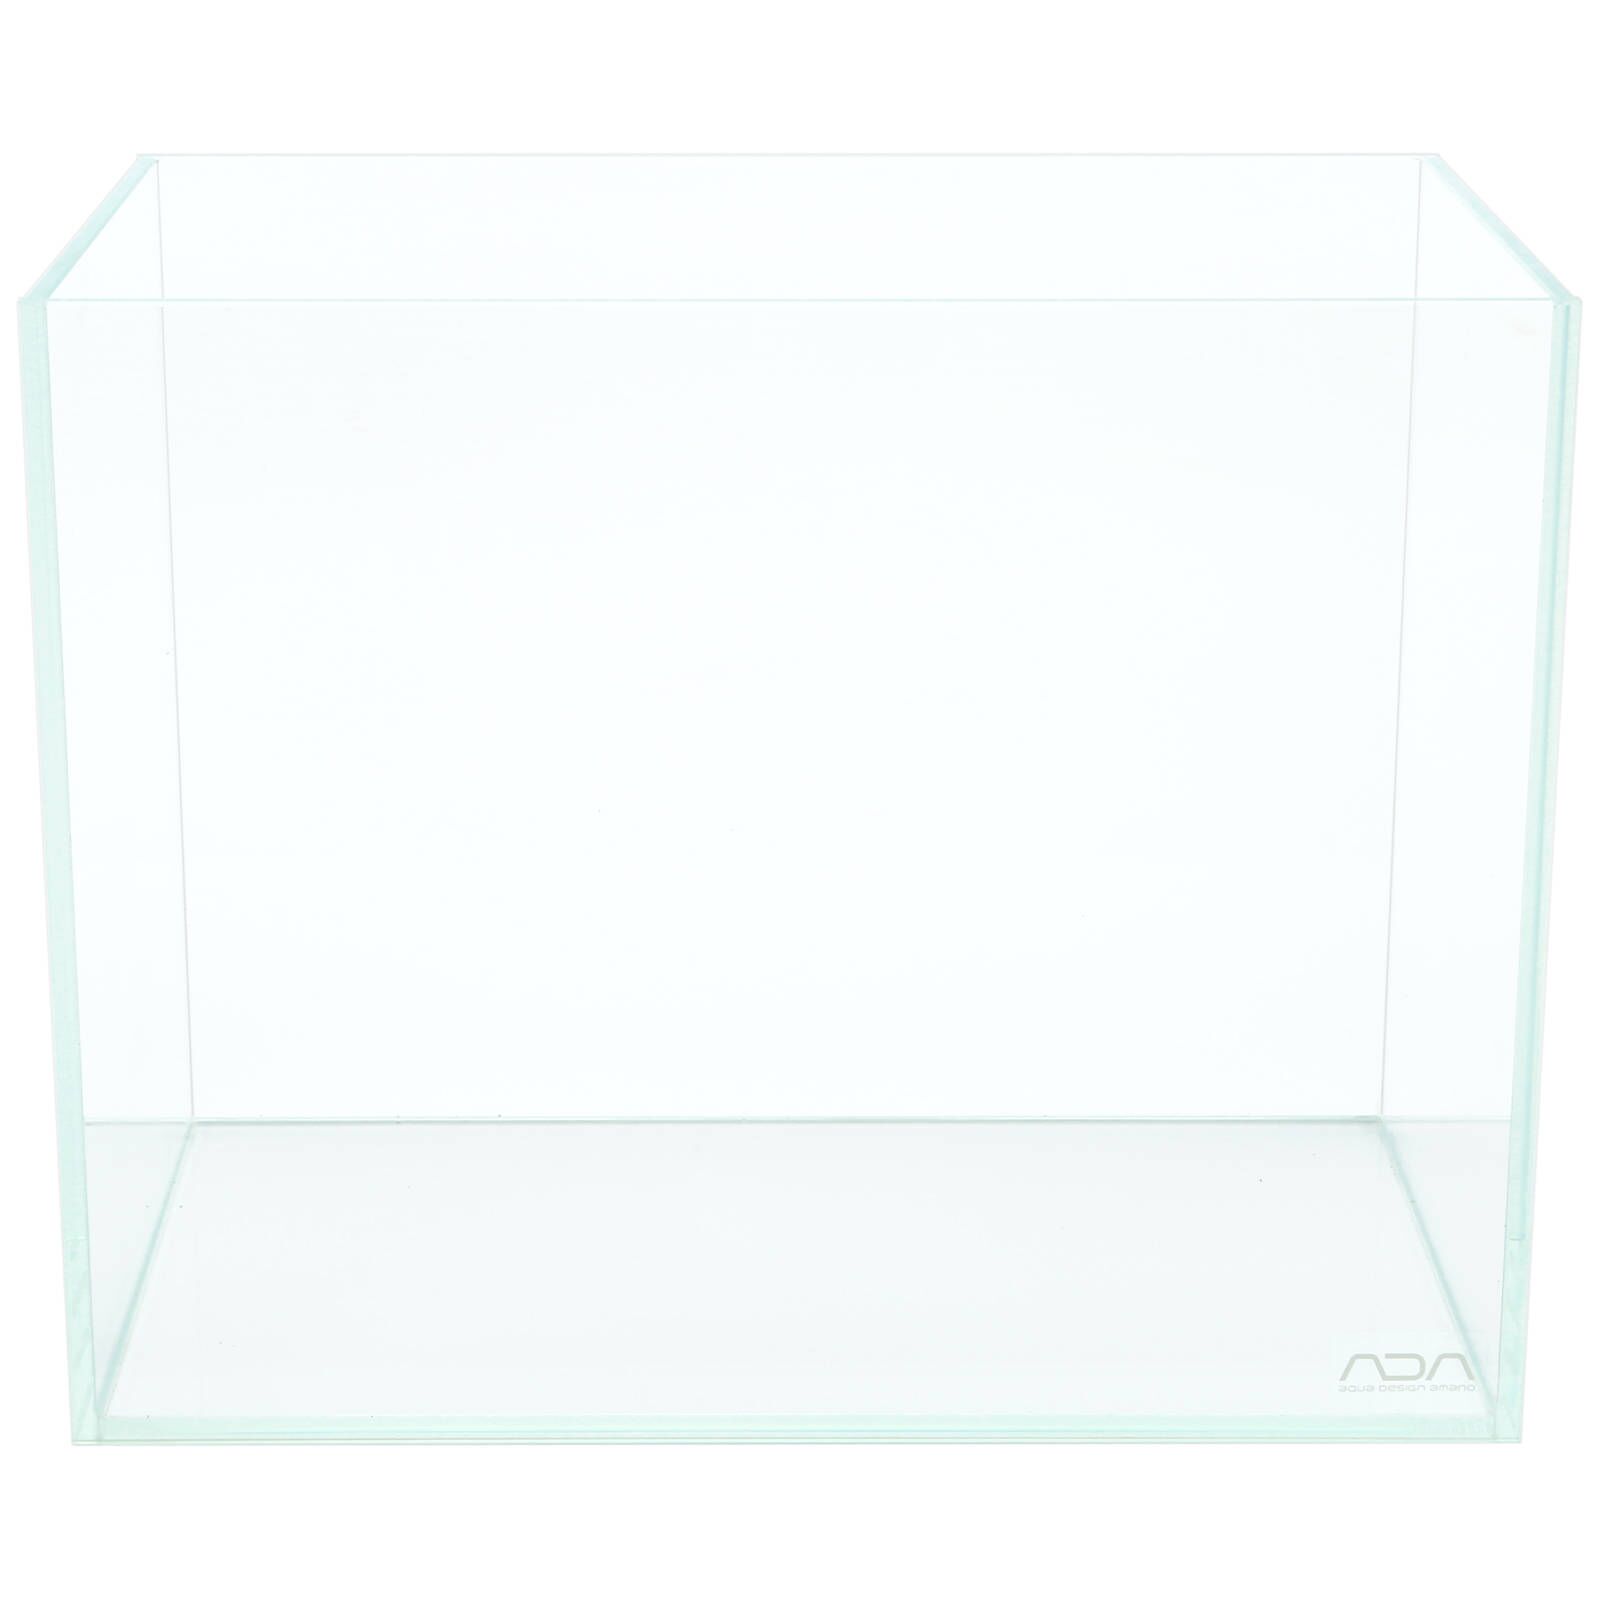 ADA - Cube Garden - 60-P - 60 × 30 × 36 cm | Aquasabi - Aquaristik